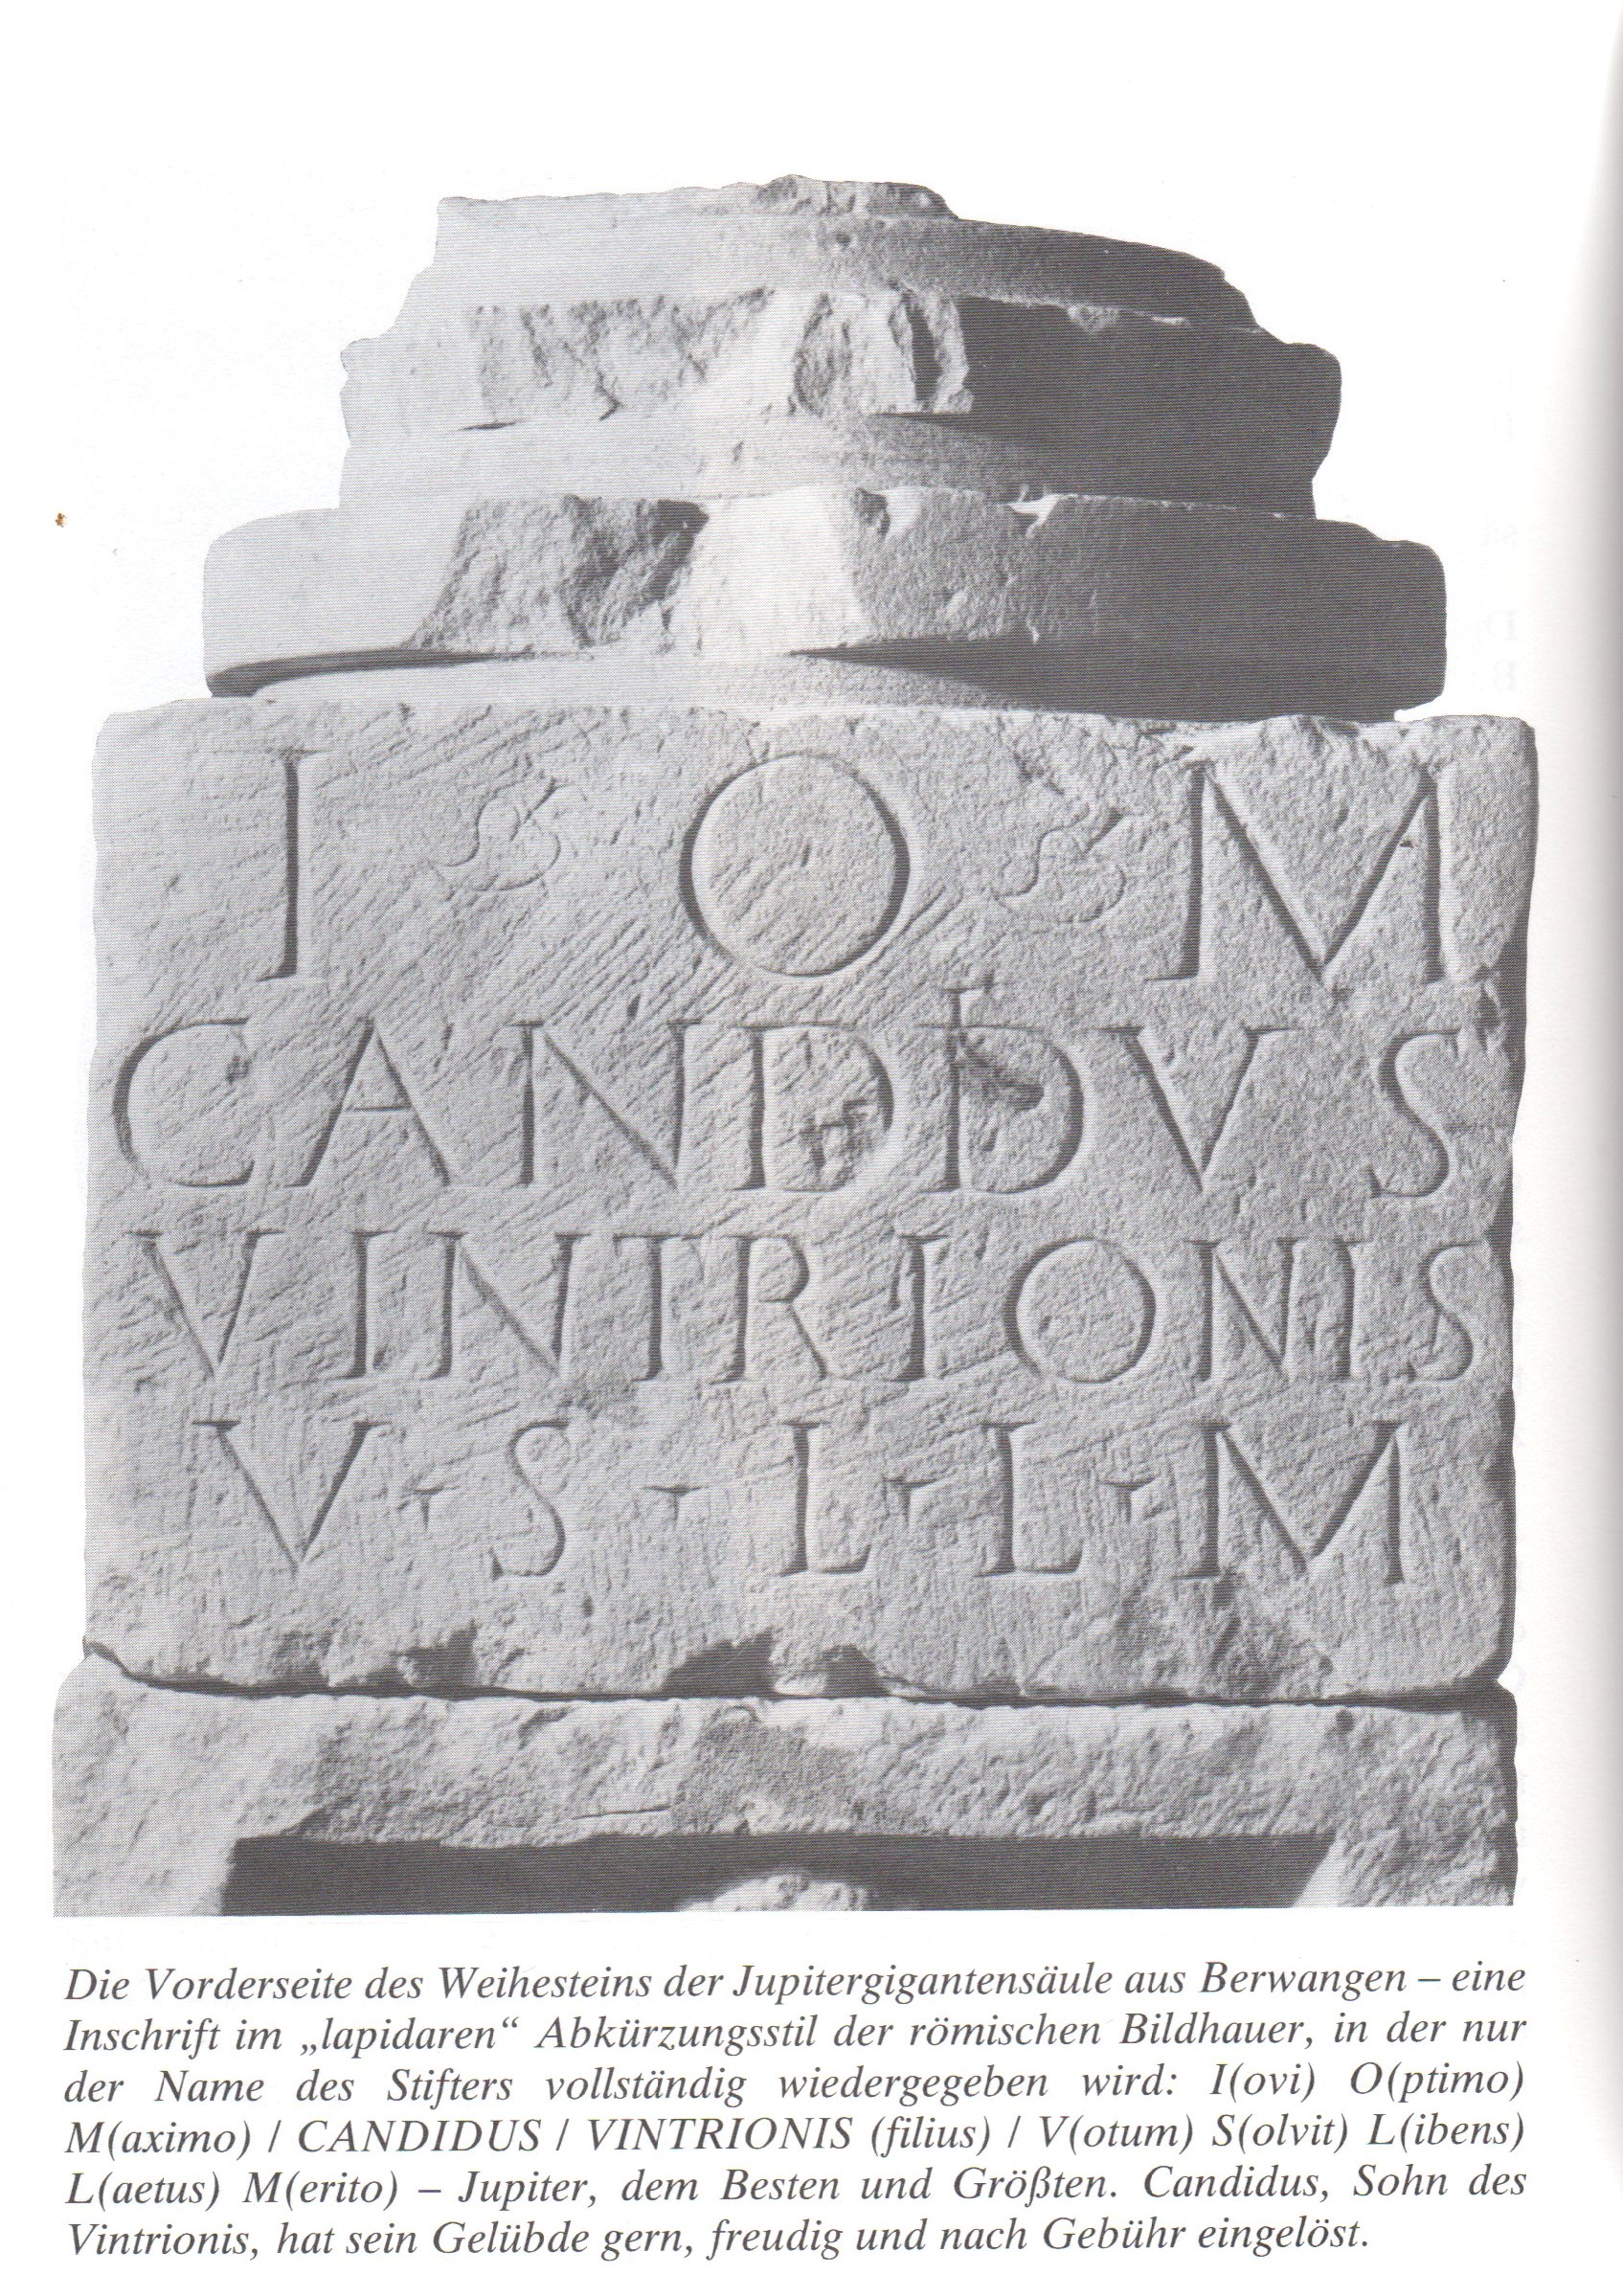  Vorderseite des Weihesteins mit einer Inschrift im &quot;lapidaren&quot; Abkürzungsstil der römischen Bildhauer, in der nur der Name des Stifters vollständig wiedergegeben wird: I - O - M / CANDIDUS / VINTRIONIS / V(otum) S(olvit) L(ibens) L(aetus) M(erito) - Jupiter, dem Besten und Größten. Candidus, Sohn des Vintrionis, hat sein Gelübde gern, freudig und nach Gebühr eingelöst. - Das Bild wird mit Klick vergrößert 